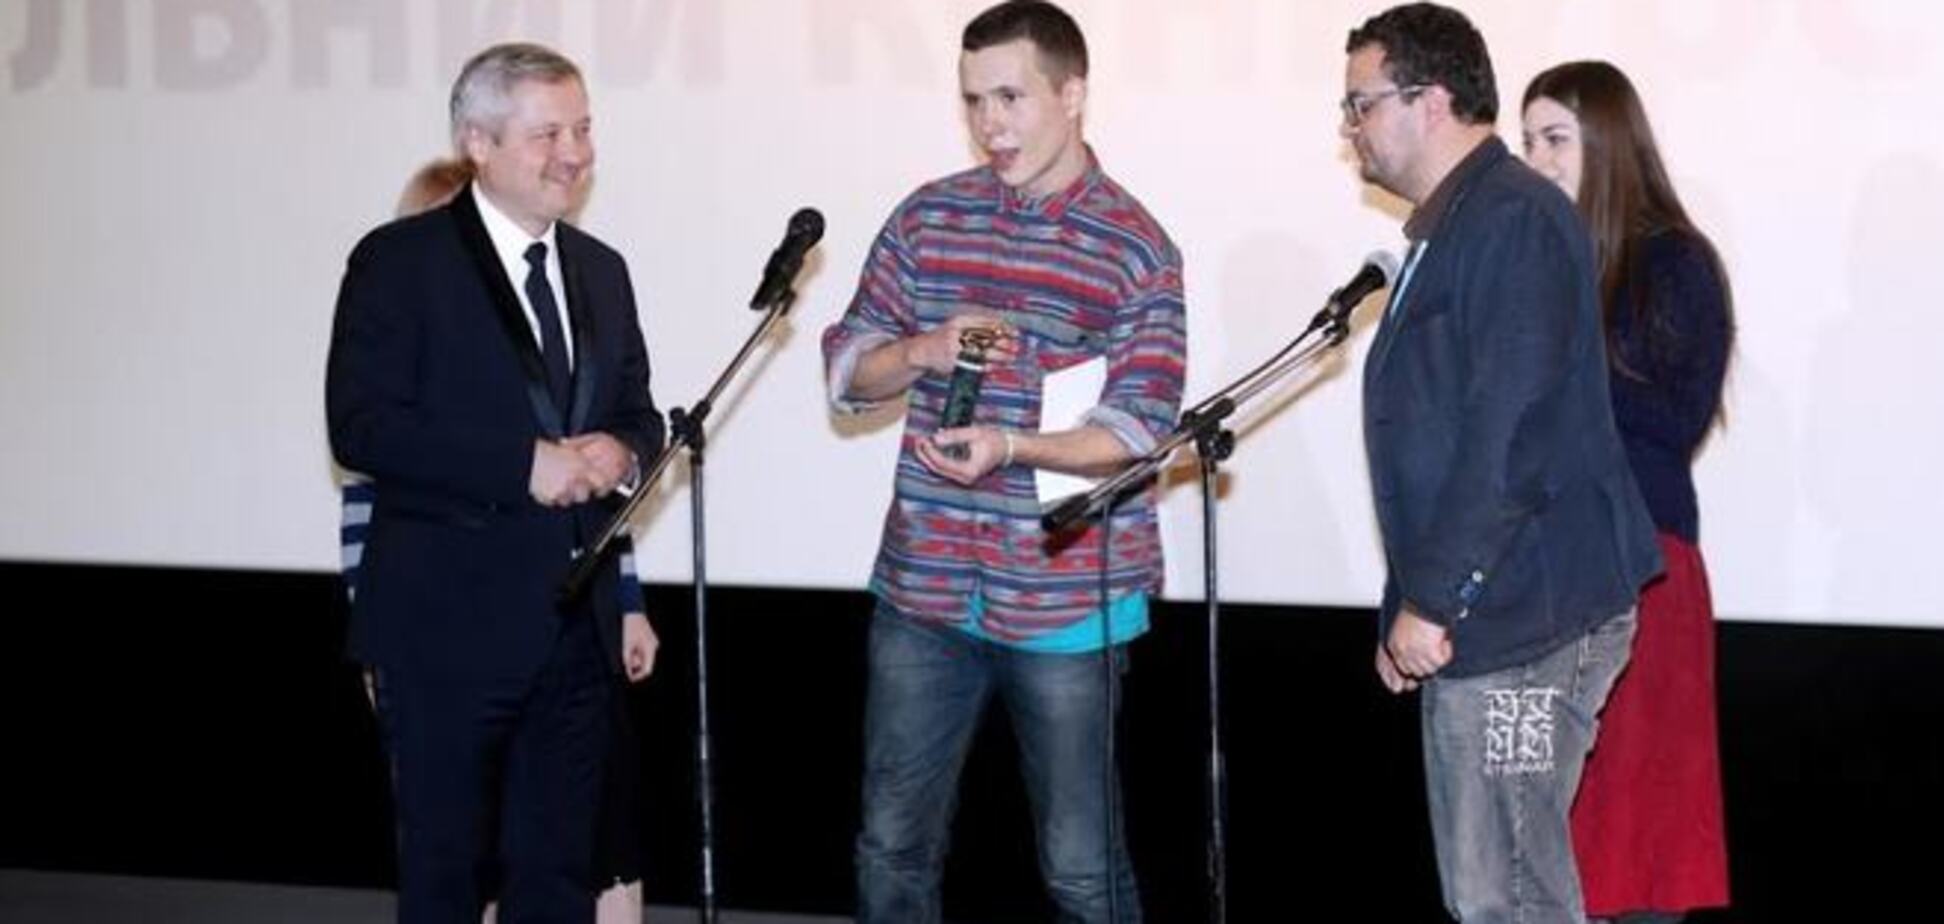 Фильм о Майдане 'Лица' стал лучшей корометражкой Национального конкурса 44-й 'Молодости'